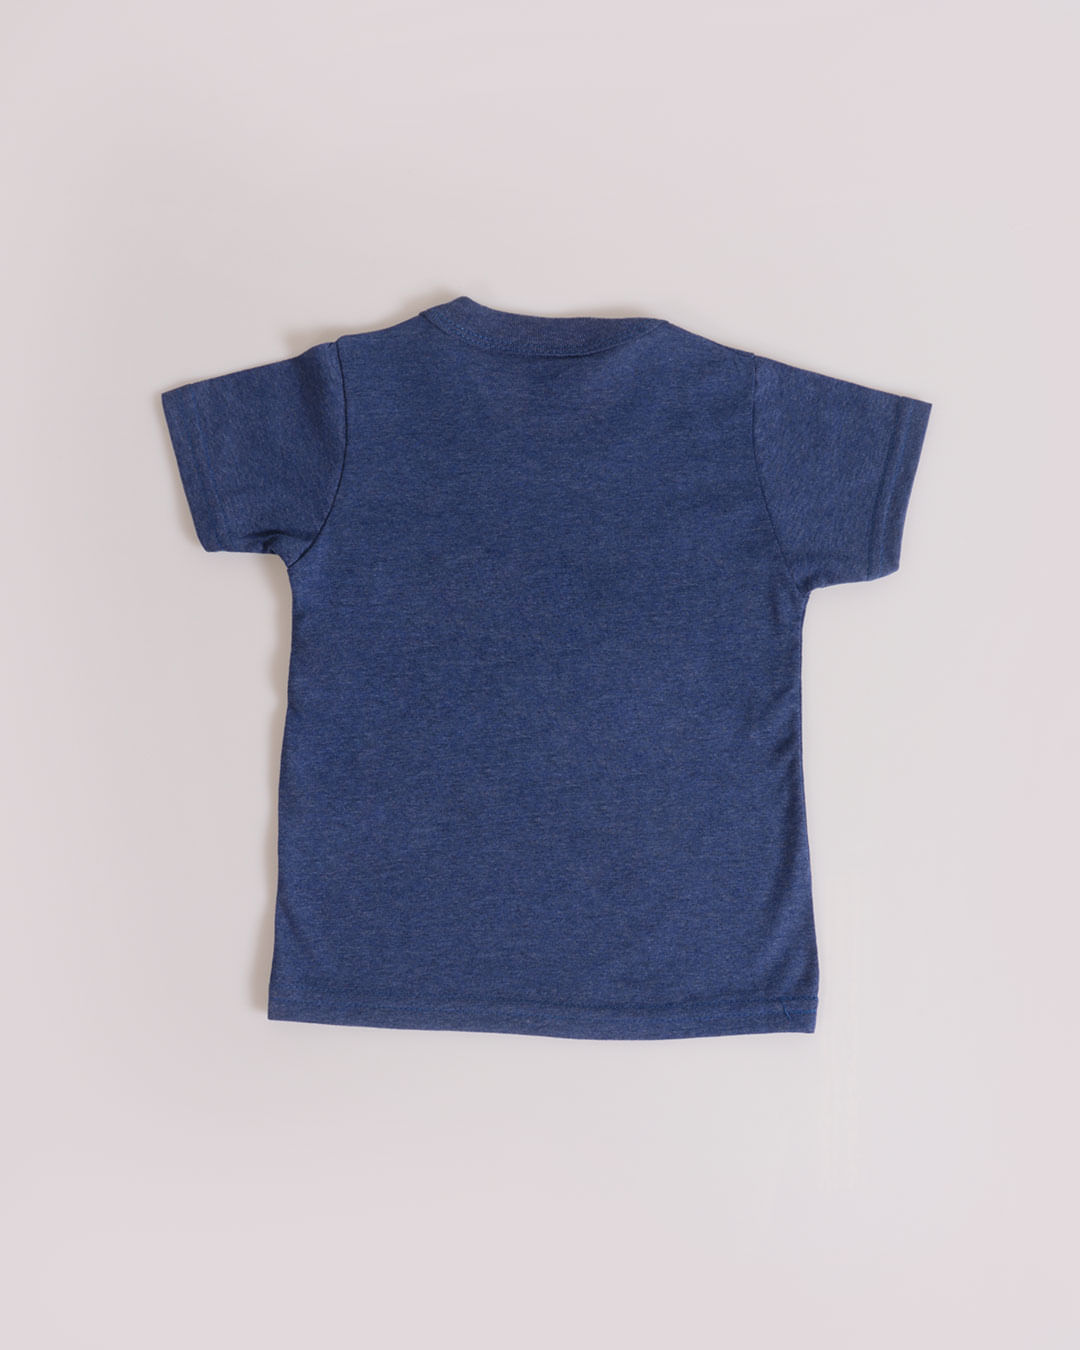 Camiseta-13806-Mpg---Azul-Escuro